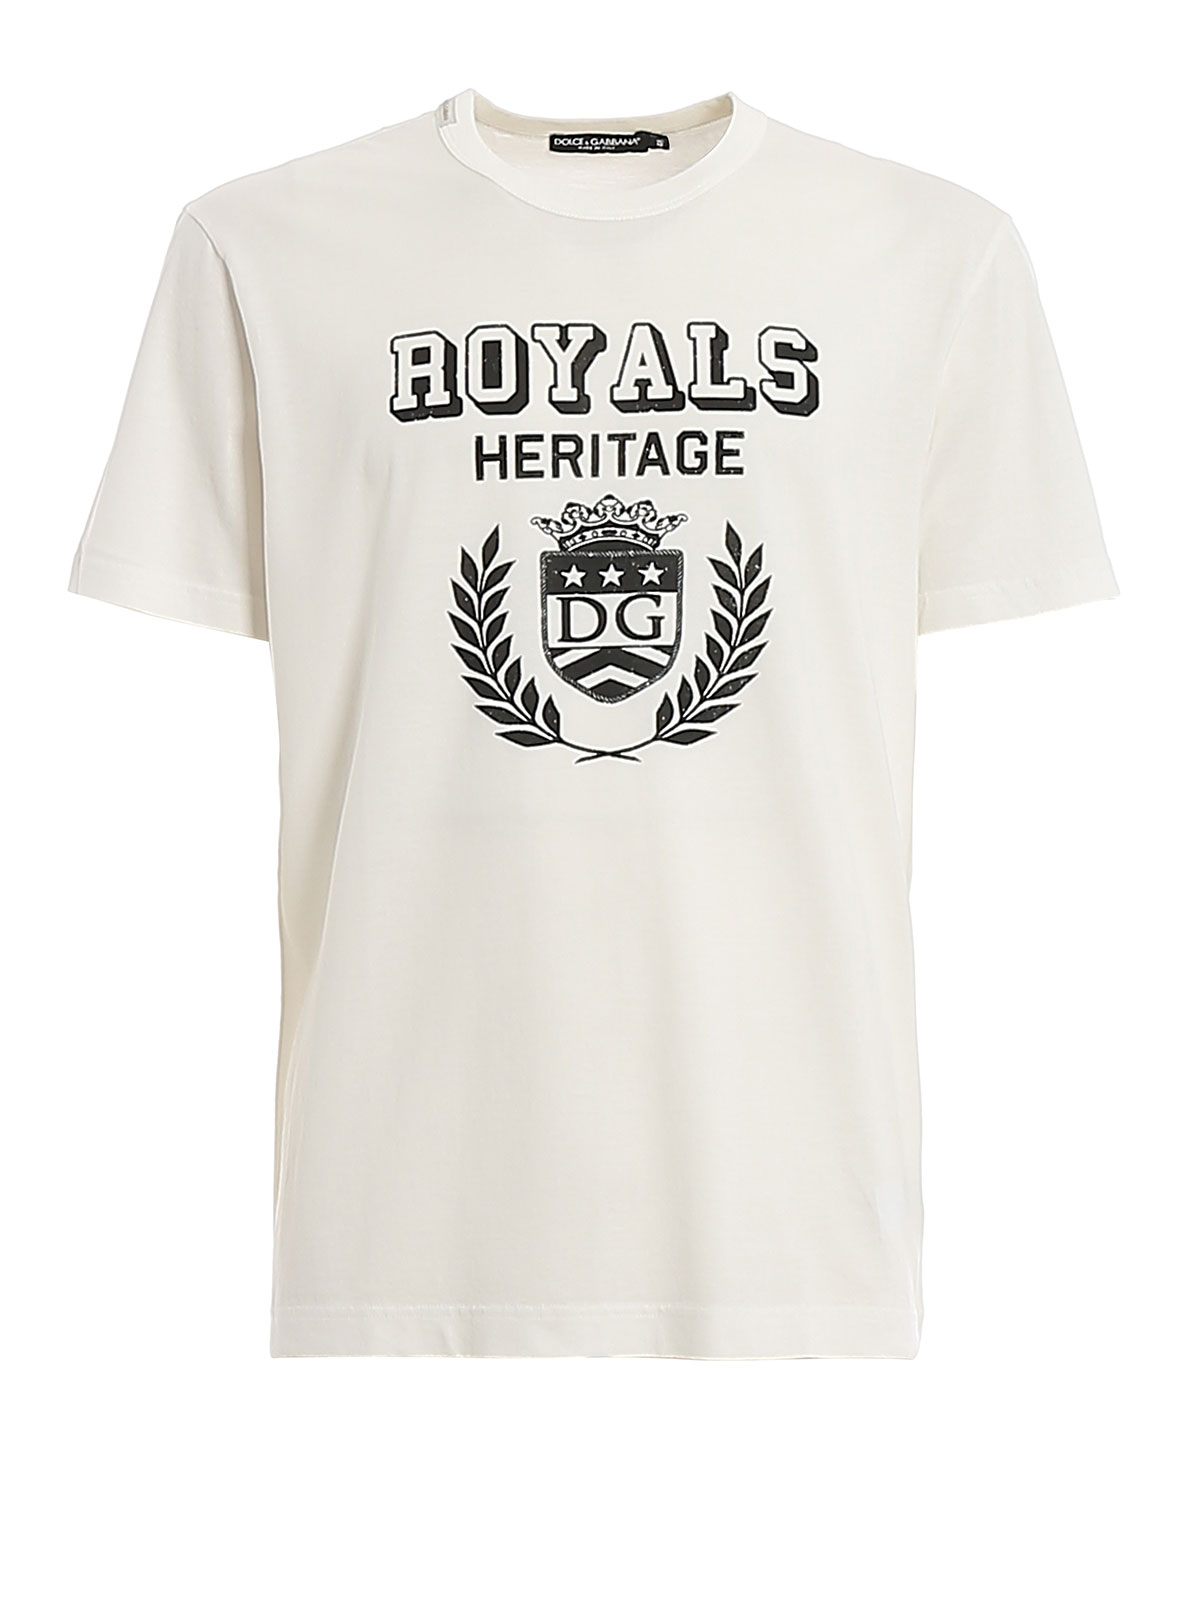 royals t shirt